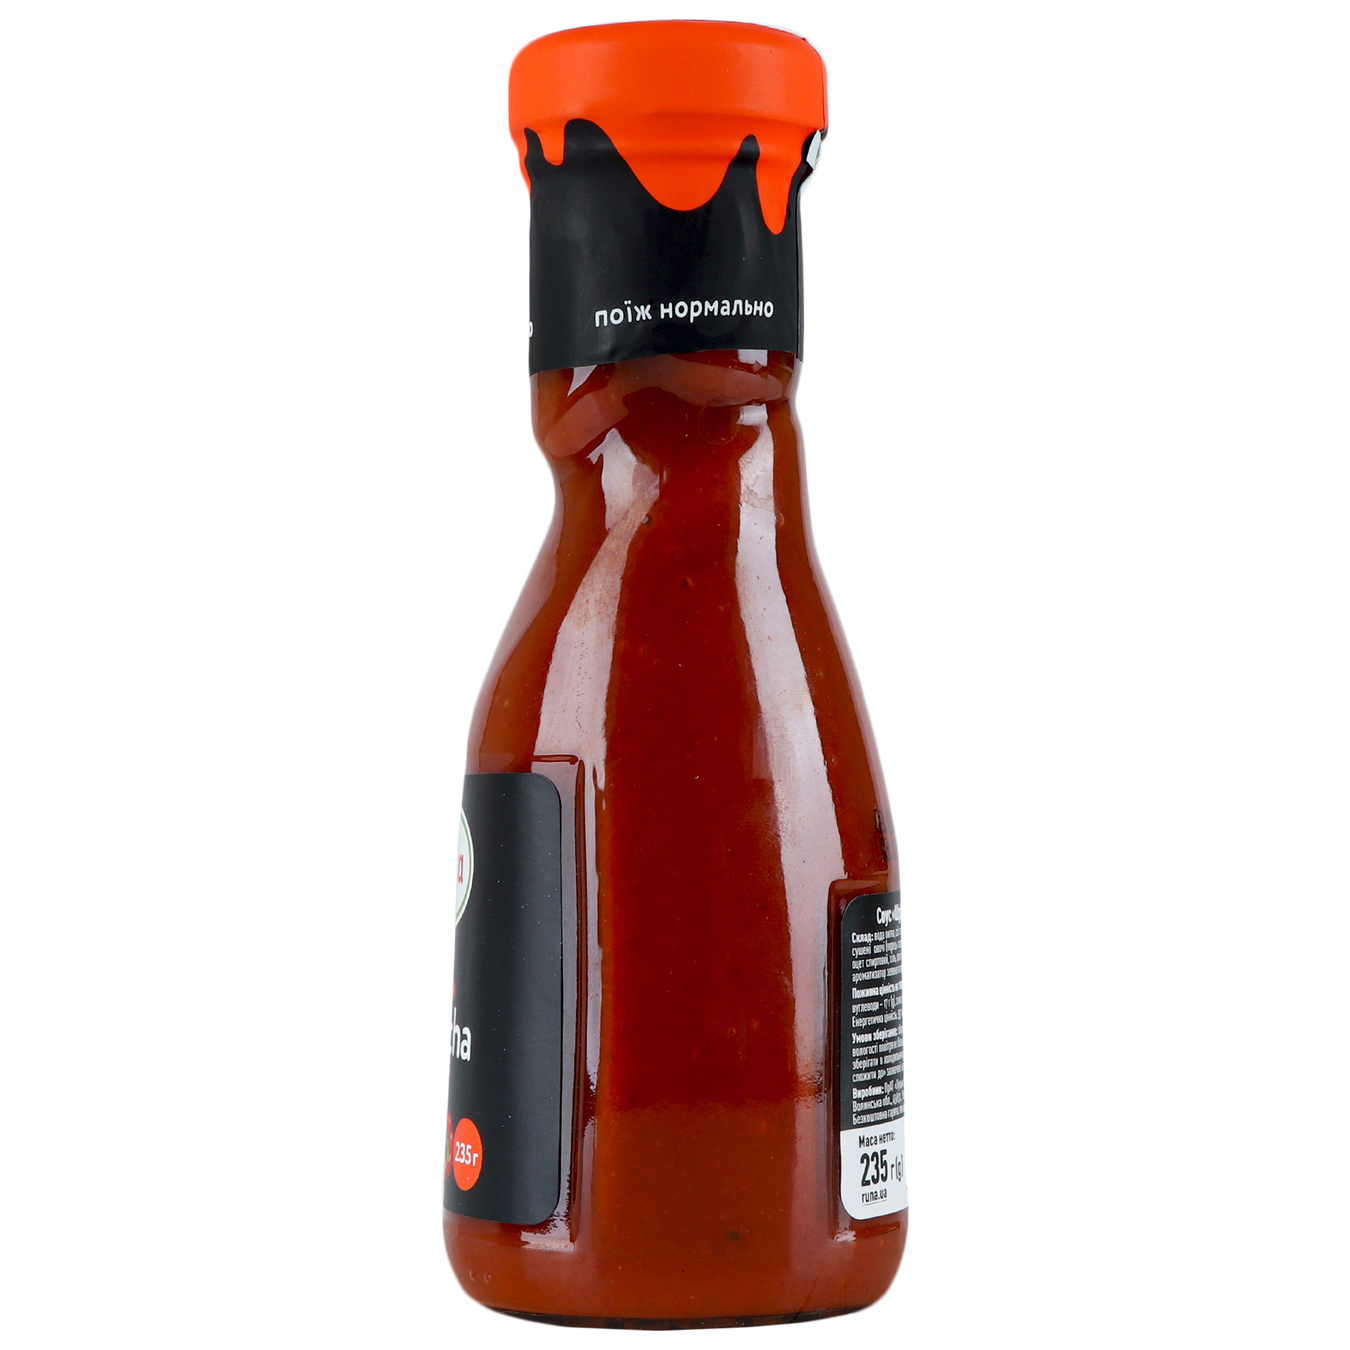 Runa Sriracha sauce glass jar 235g 5